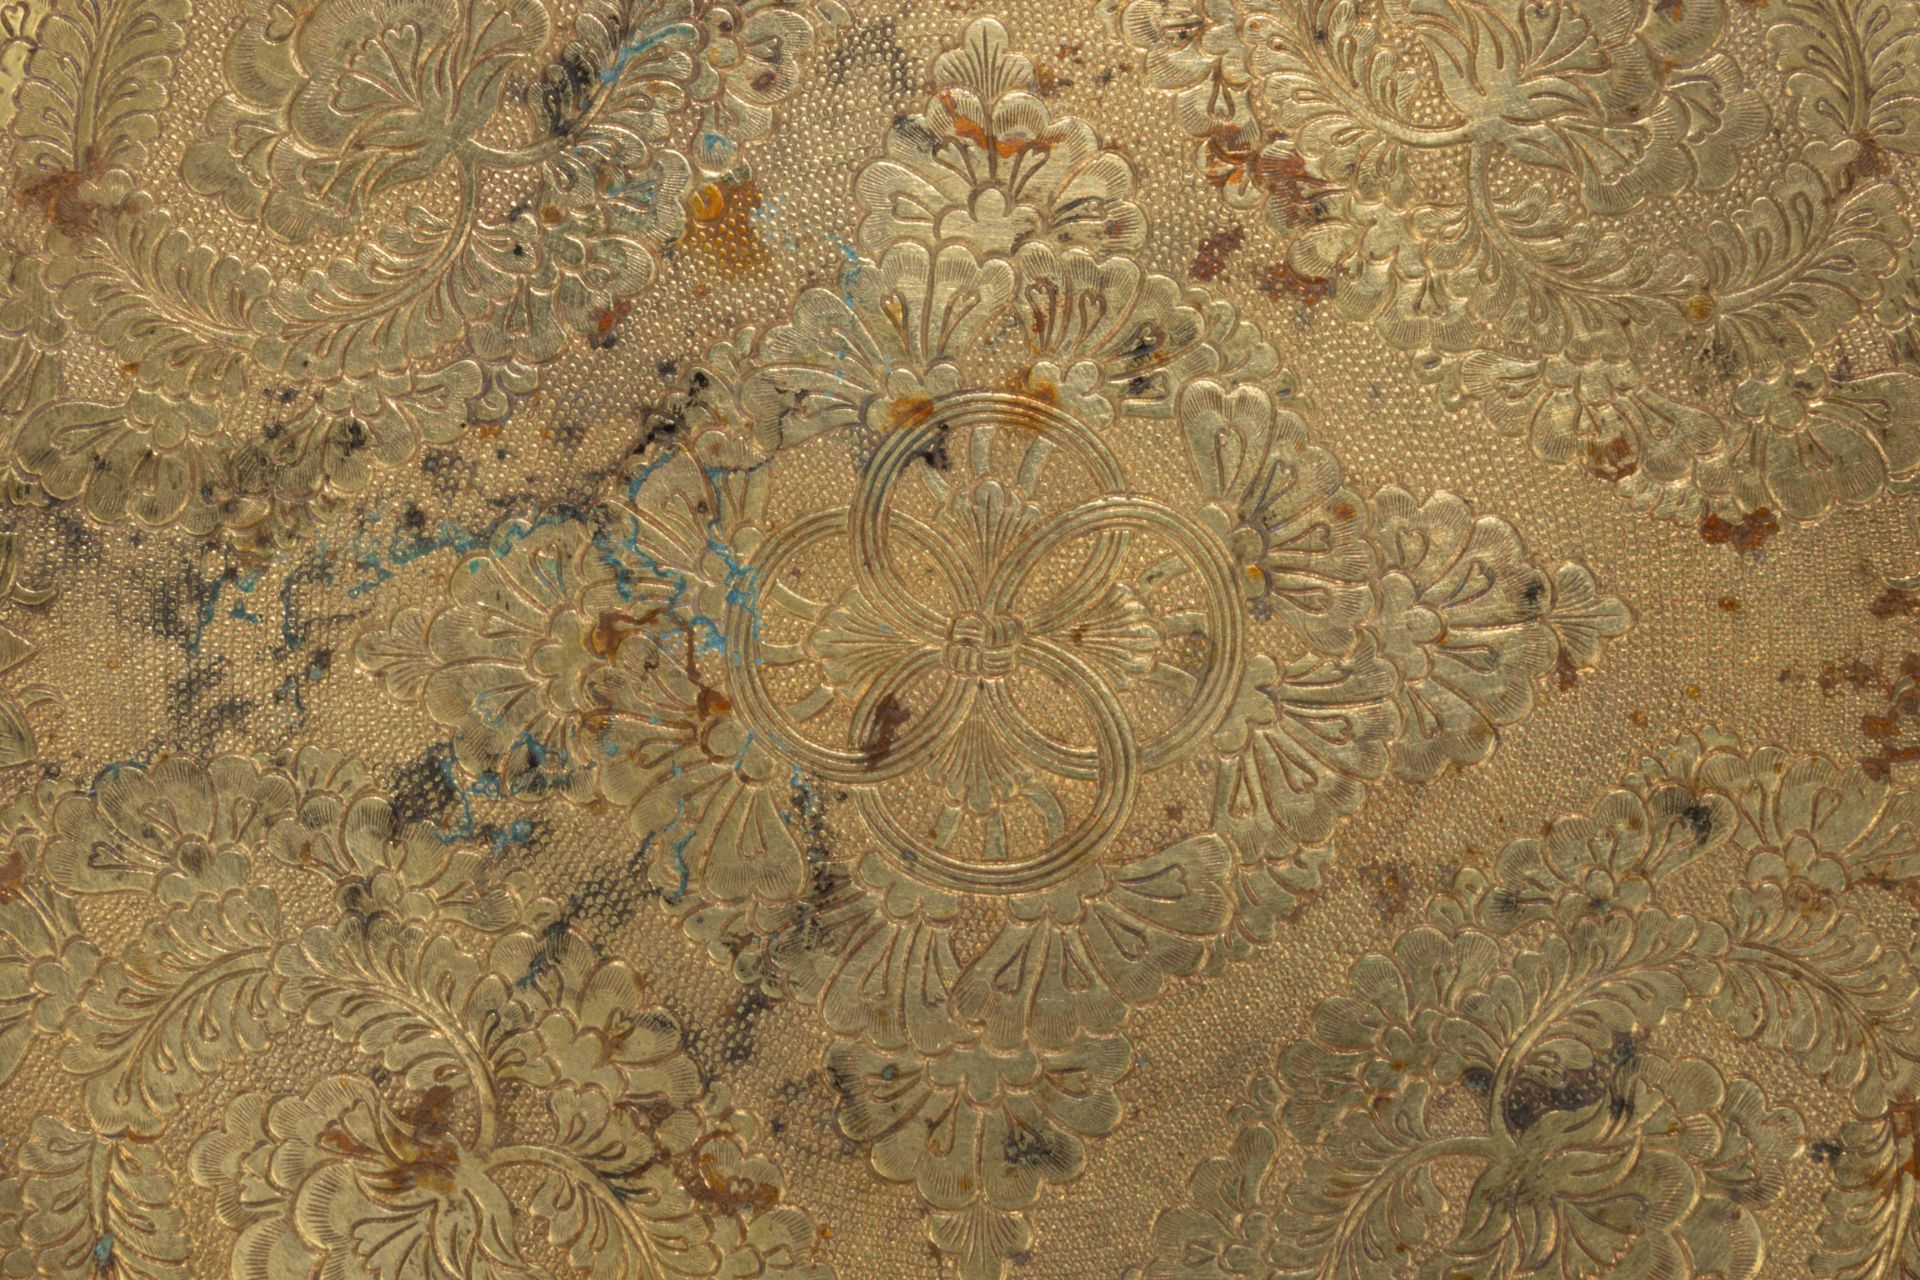 Coupelle plate à marli incurvé, finement ciselée de motifs floraux et cercles concentriques centraux - Bild 8 aus 8